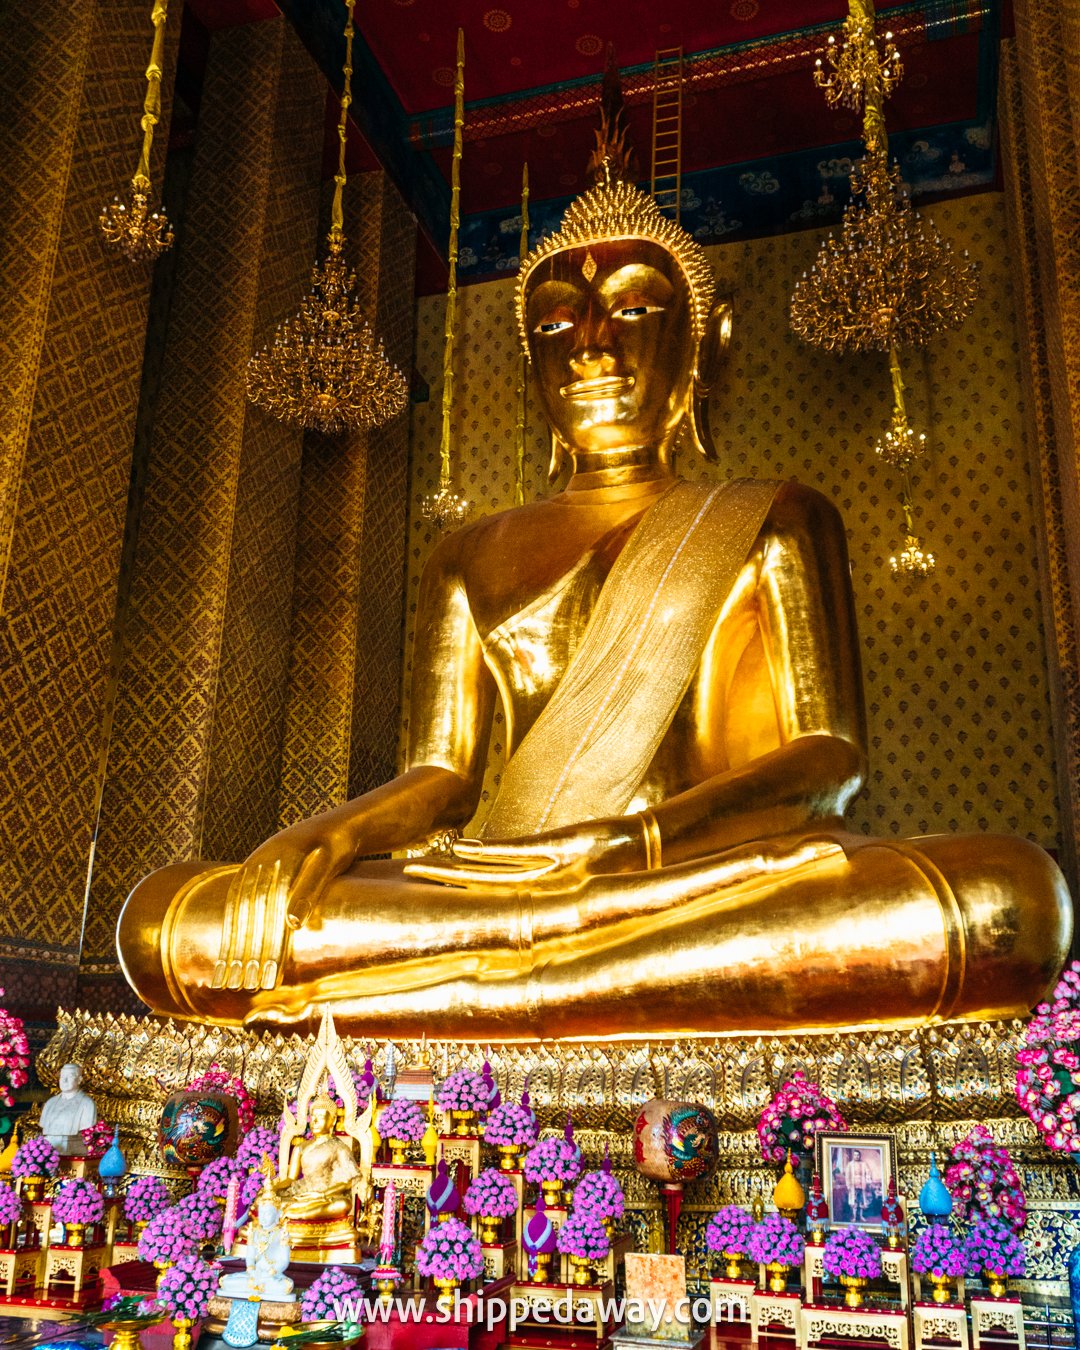 Big golden buddha statue Bangkok Thailand, chinatown bangkok, tips for visiting chinatown in bangkok, things to know before visiting chinatown bangkok